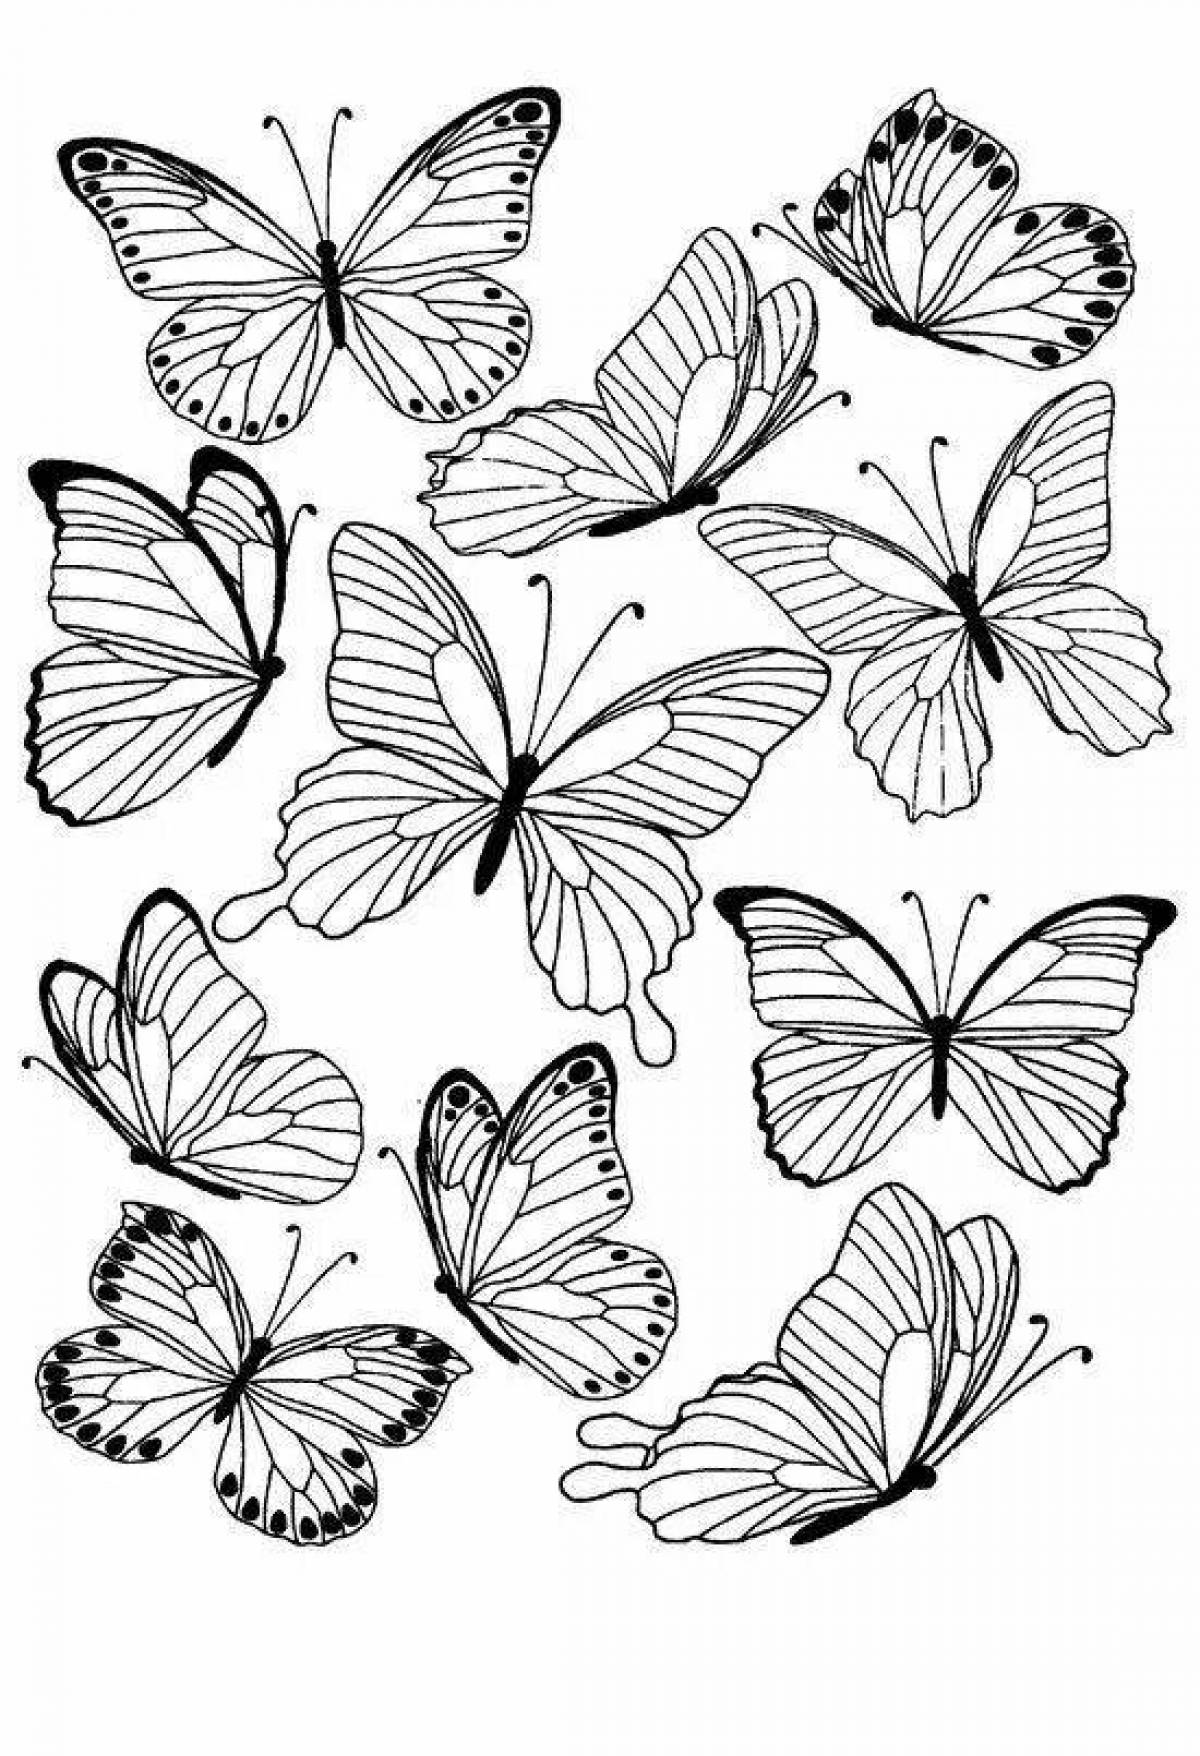 Раскраска Бабочки 🖍. Раскрашиваем любимыми цветами бесплатно и с улыбкой 👍